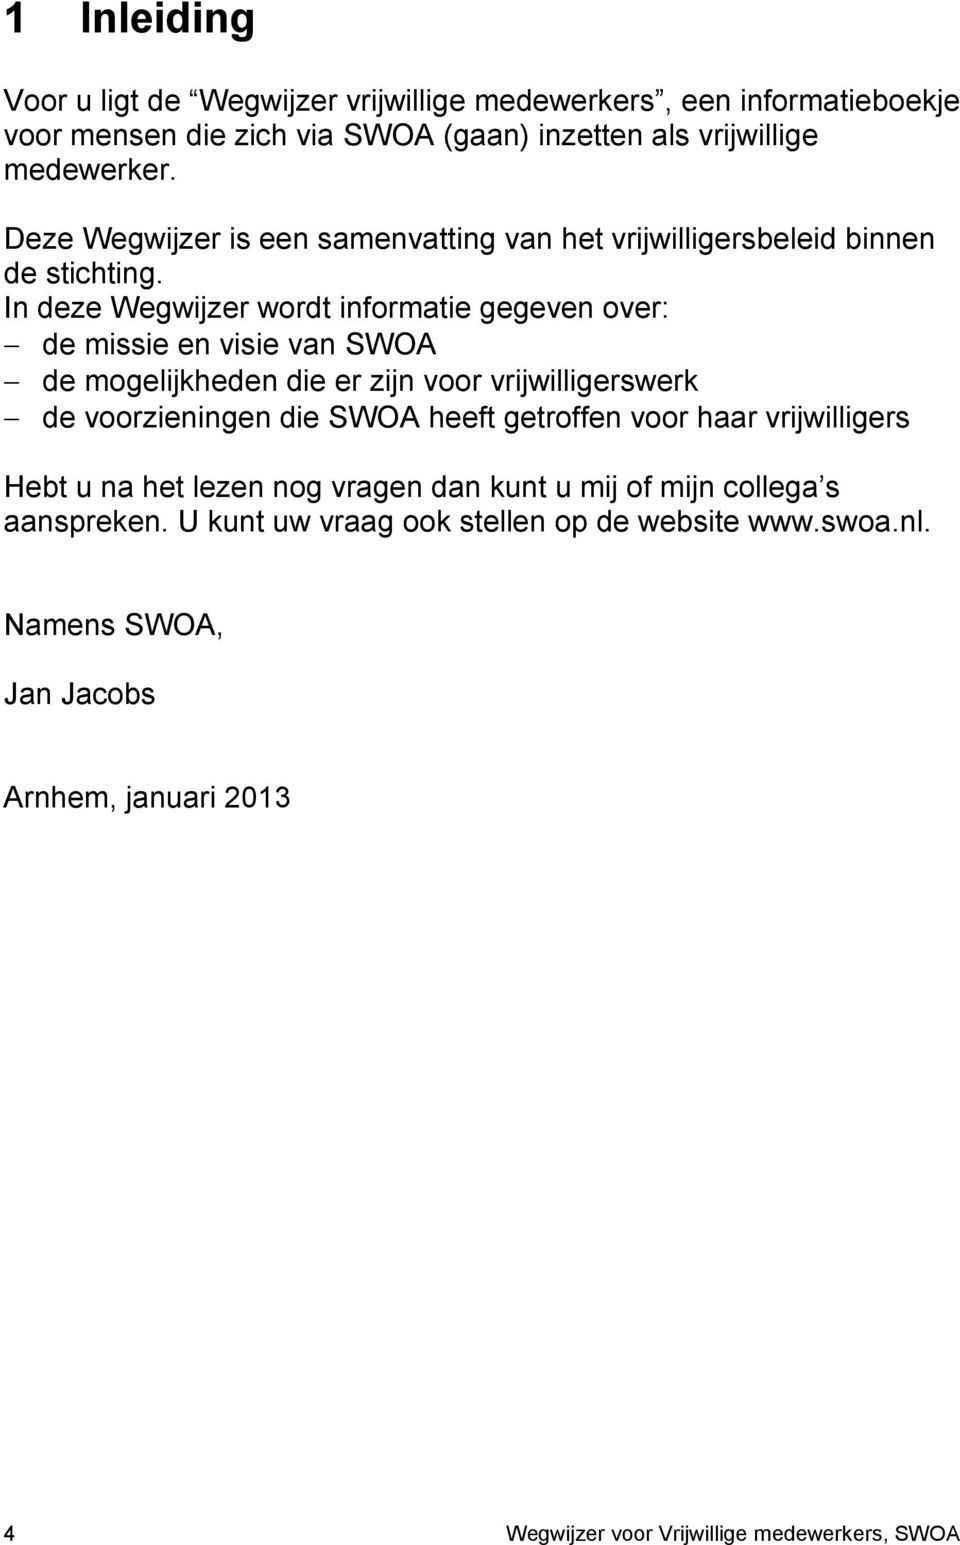 In deze Wegwijzer wordt informatie gegeven over: de missie en visie van SWOA de mogelijkheden die er zijn voor vrijwilligerswerk de voorzieningen die SWOA heeft